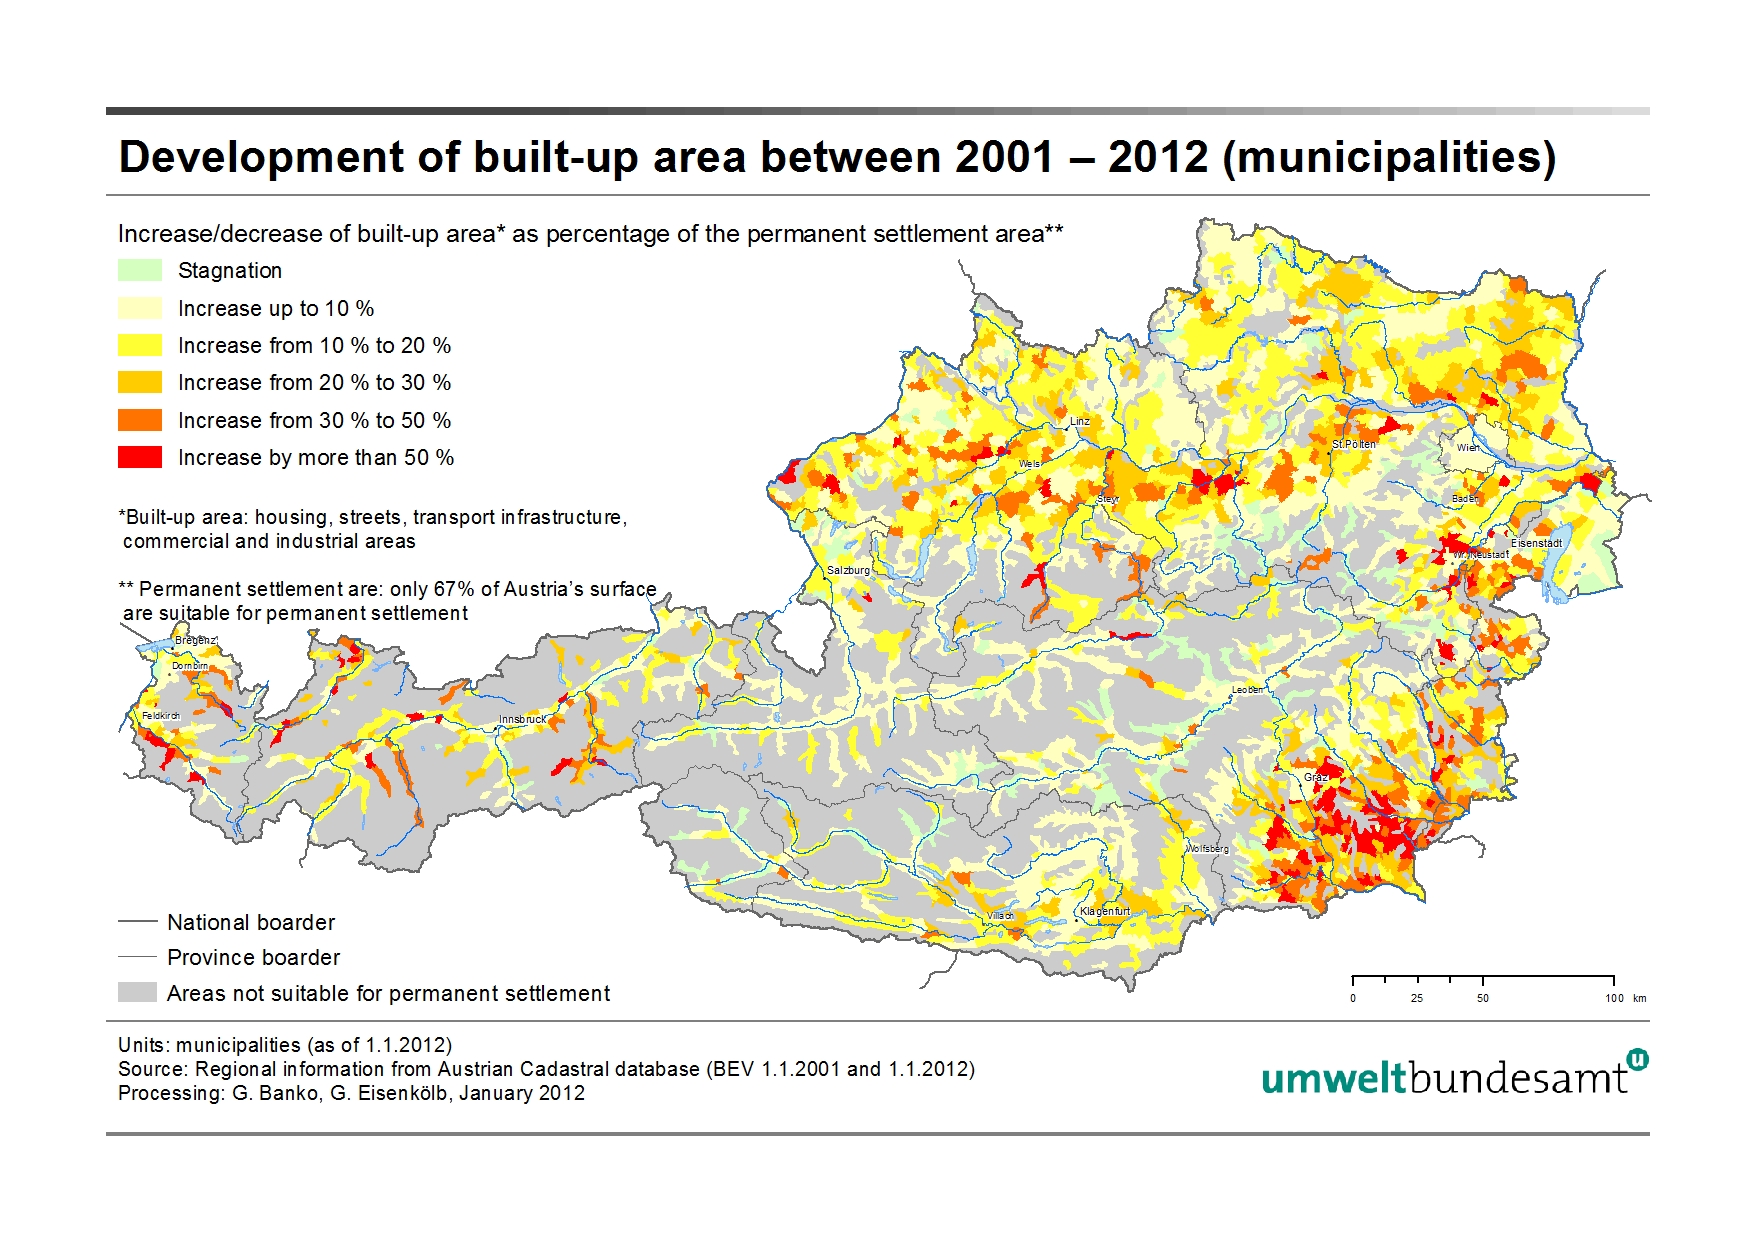 Development of built-up area between 2001-2012 (municipalities)